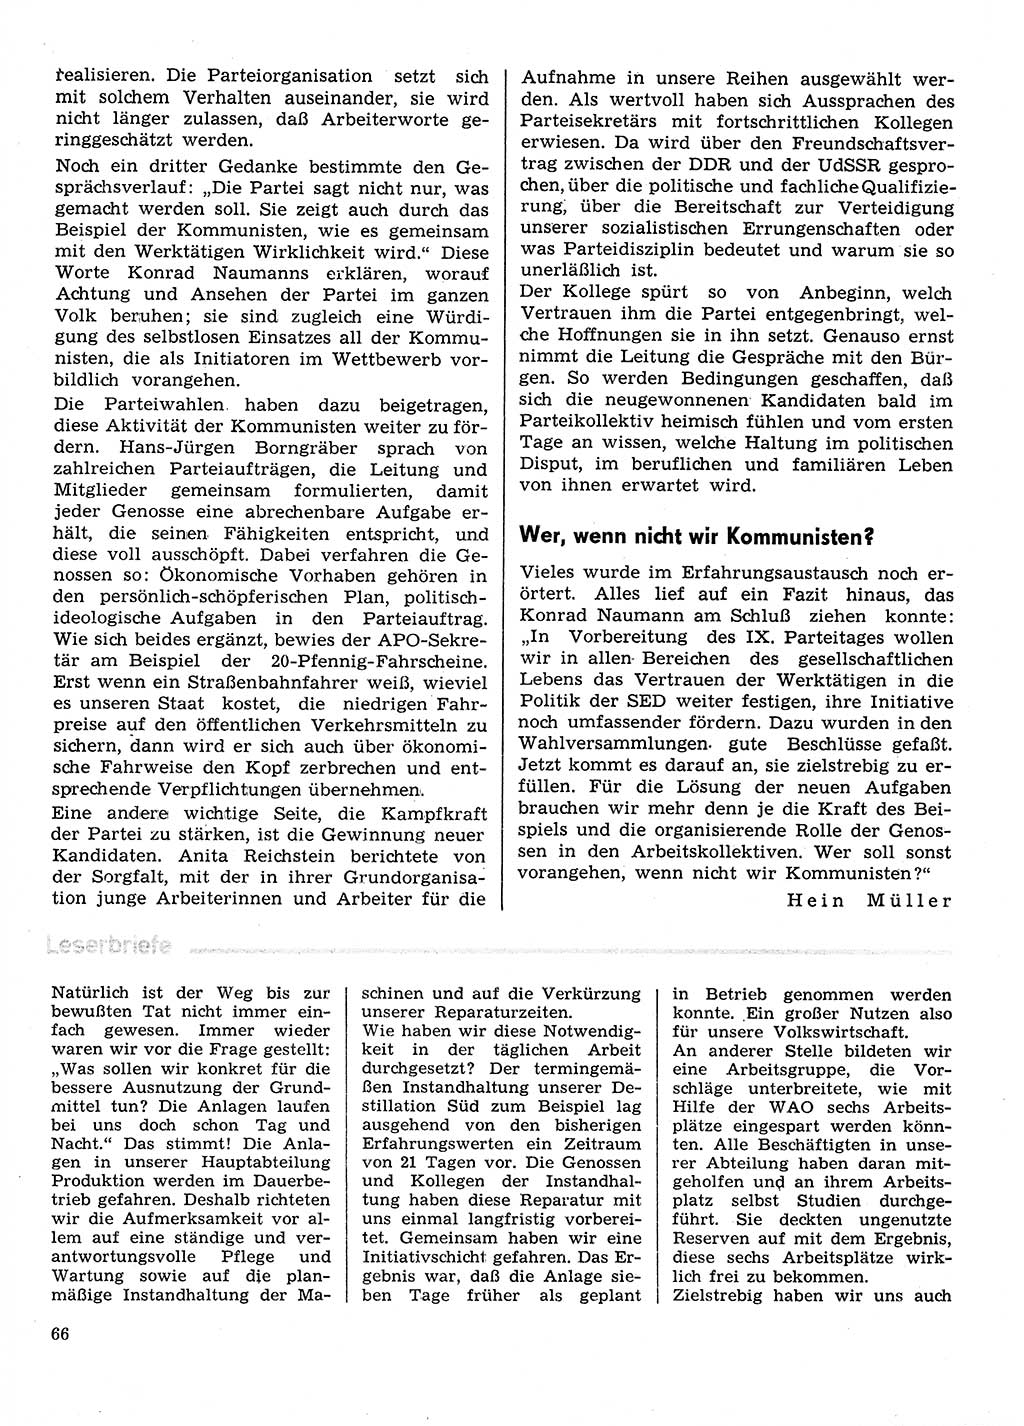 Neuer Weg (NW), Organ des Zentralkomitees (ZK) der SED (Sozialistische Einheitspartei Deutschlands) für Fragen des Parteilebens, 31. Jahrgang [Deutsche Demokratische Republik (DDR)] 1976, Seite 66 (NW ZK SED DDR 1976, S. 66)